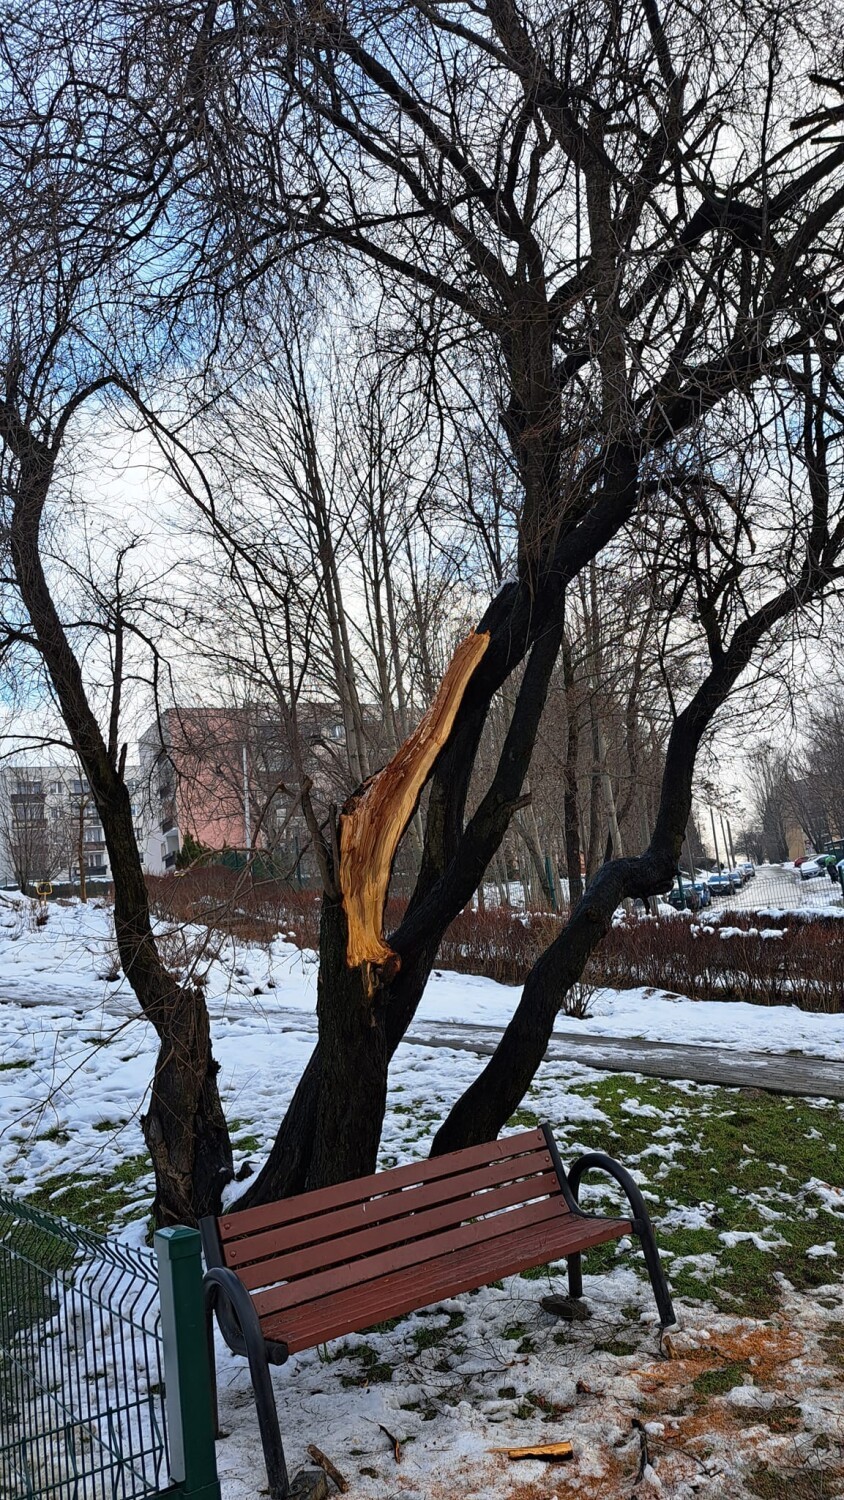 Zielony Zakątek w Bielsku-Białej zniszczony przez wandali. Wyrwane ławki, uszkodzone ogrodzenie, połamane drzewo